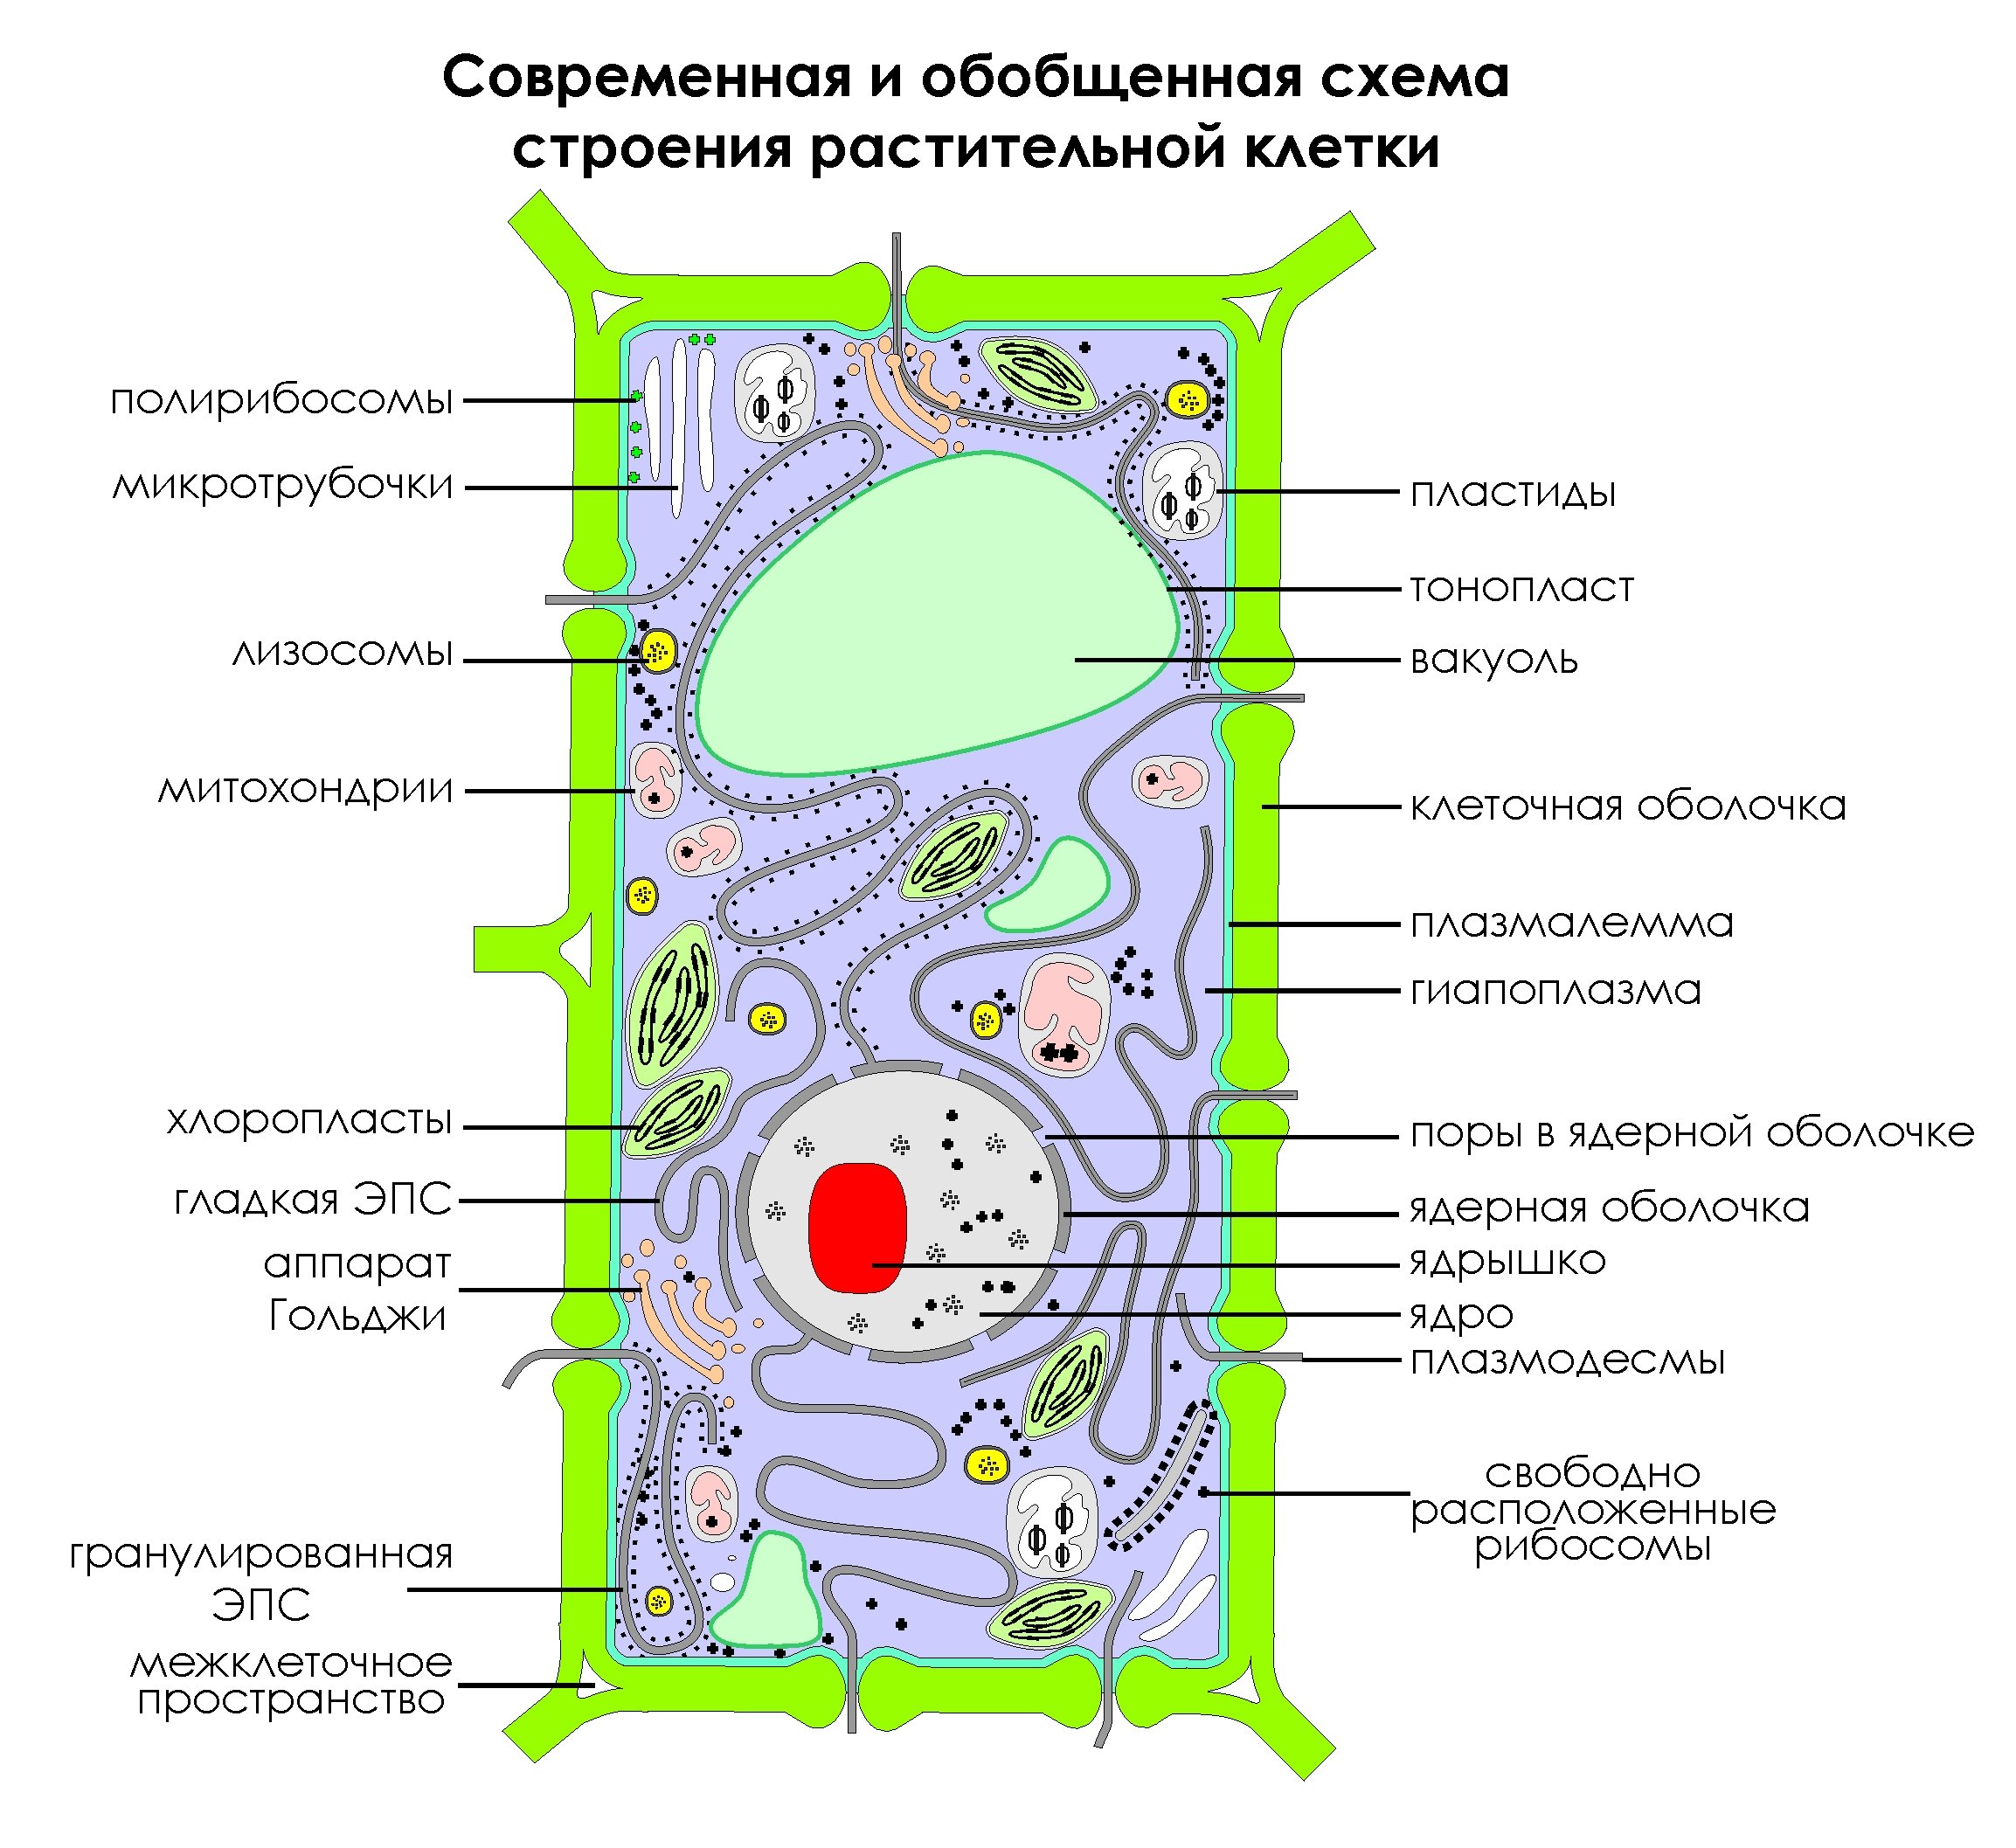 Сделать рисунок строения растительной клетки. Схема строения клетки растения. Современная обобщенная схема строения растительной клетки. Изображение растительной клетки схема. Обобщенная схема строения растительной клетки.